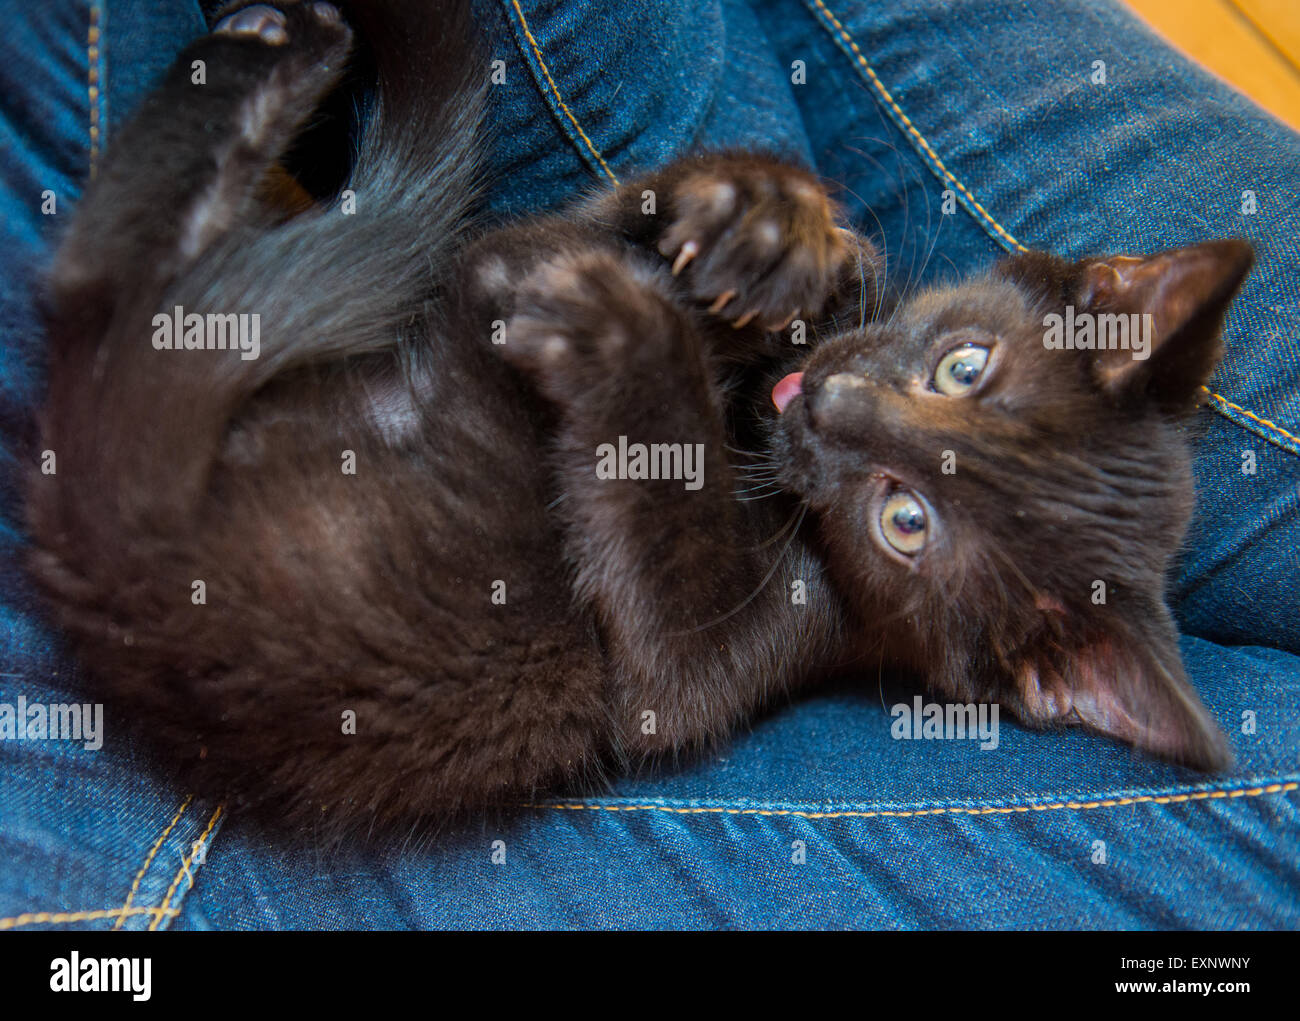 Un chaton noir recroquevillé dans les genoux de l'homme avec des griffes tendus, de la langue, de jouer ou de nettoyage elle-même. Banque D'Images